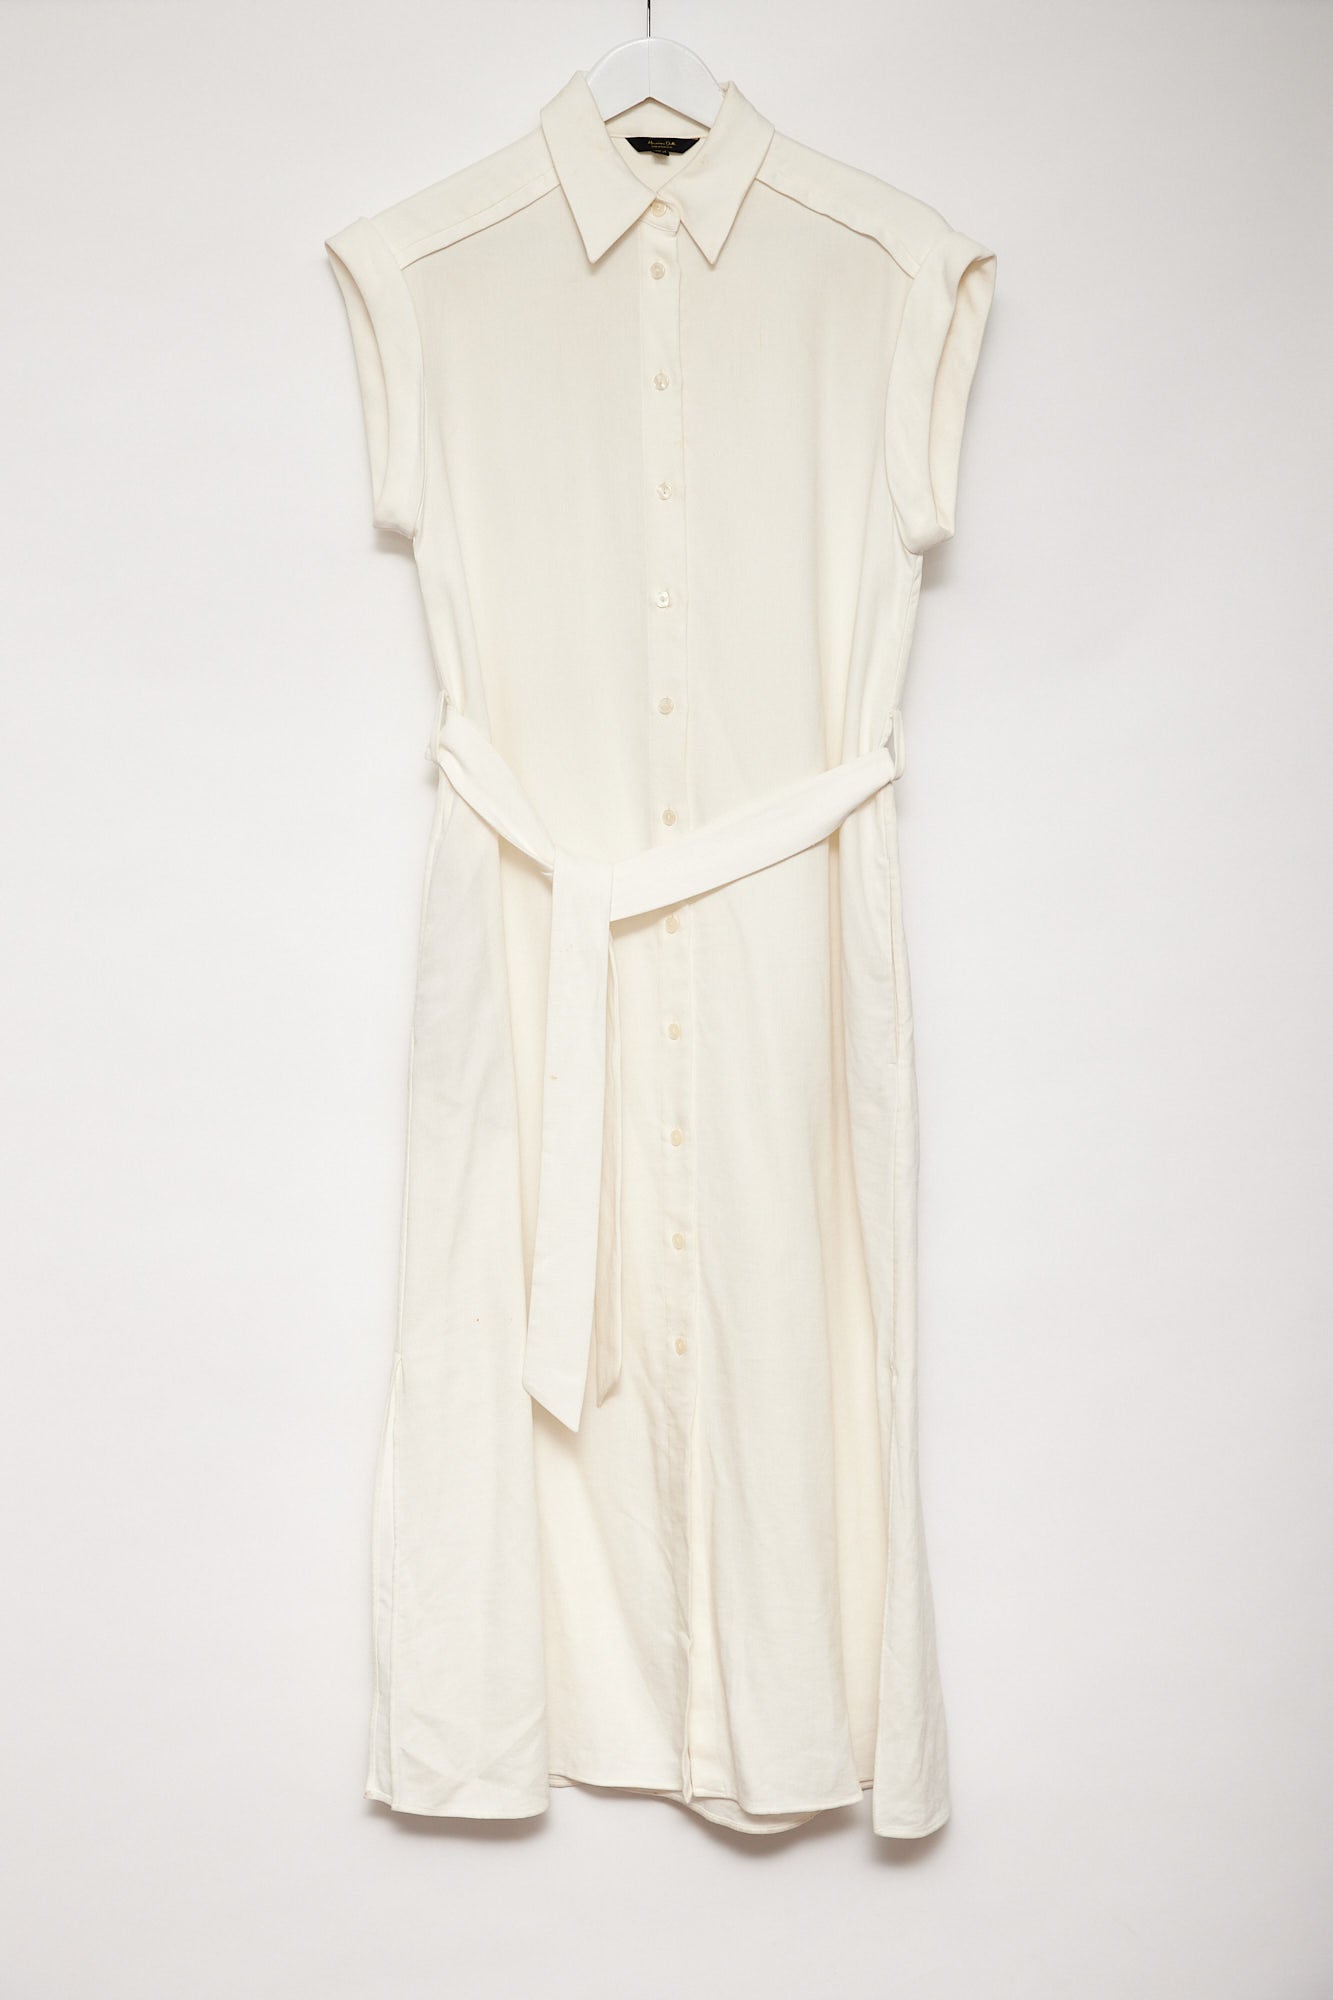 Womens Massimo Dutti white shirt dress size small